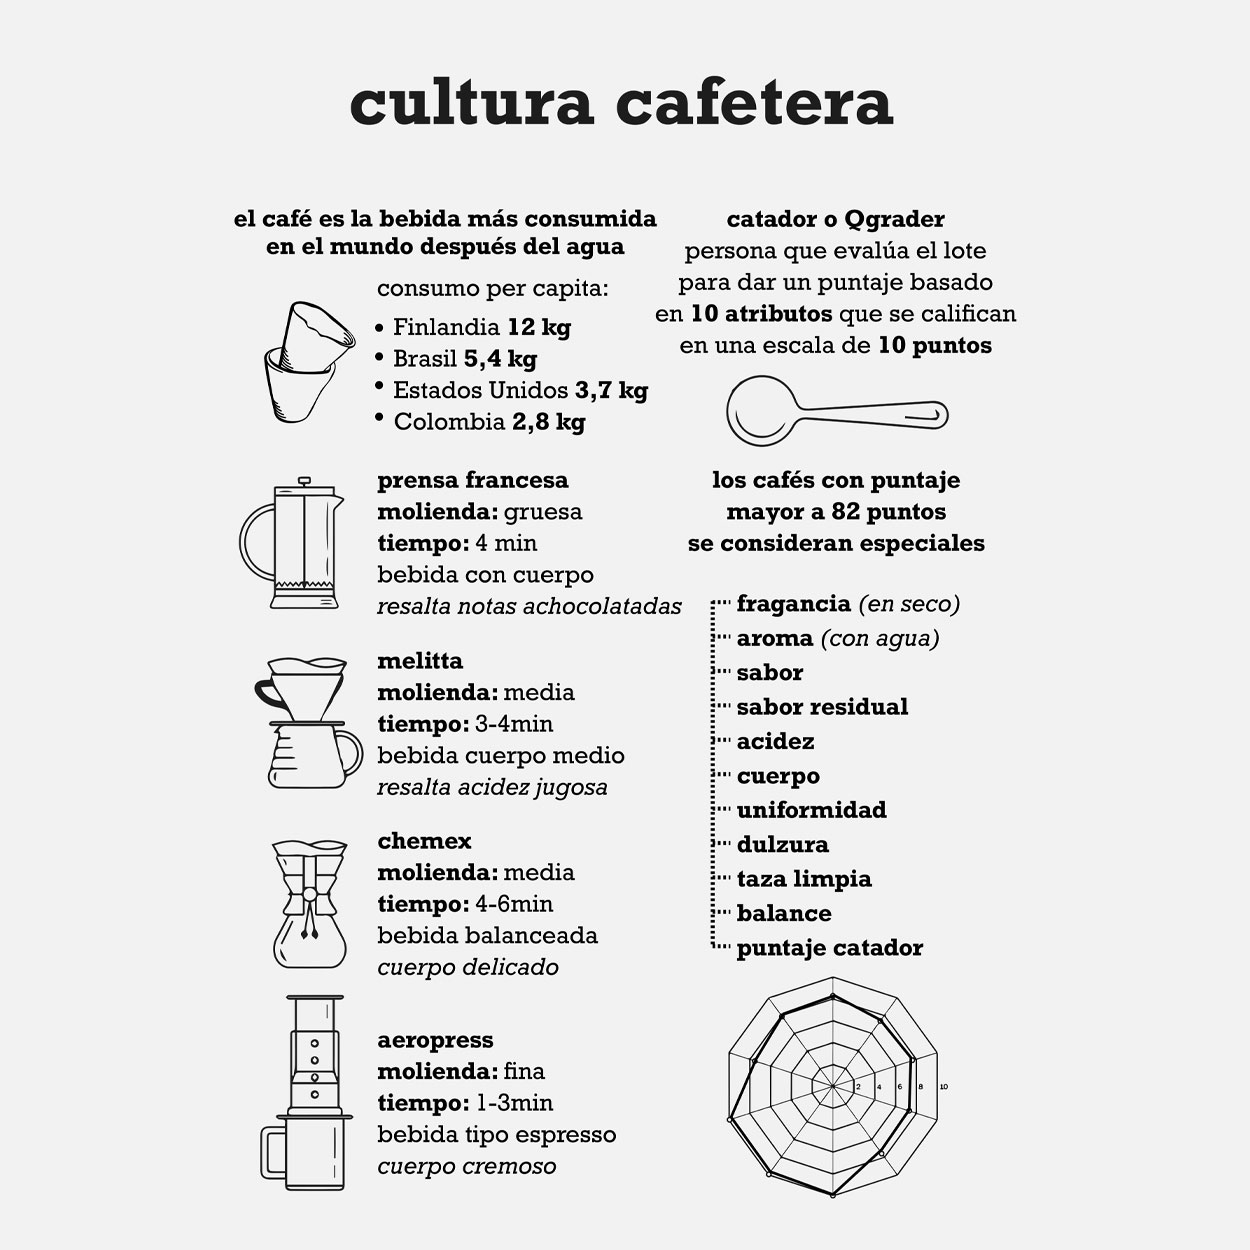 edicion_cultura_cafetera_2022_11